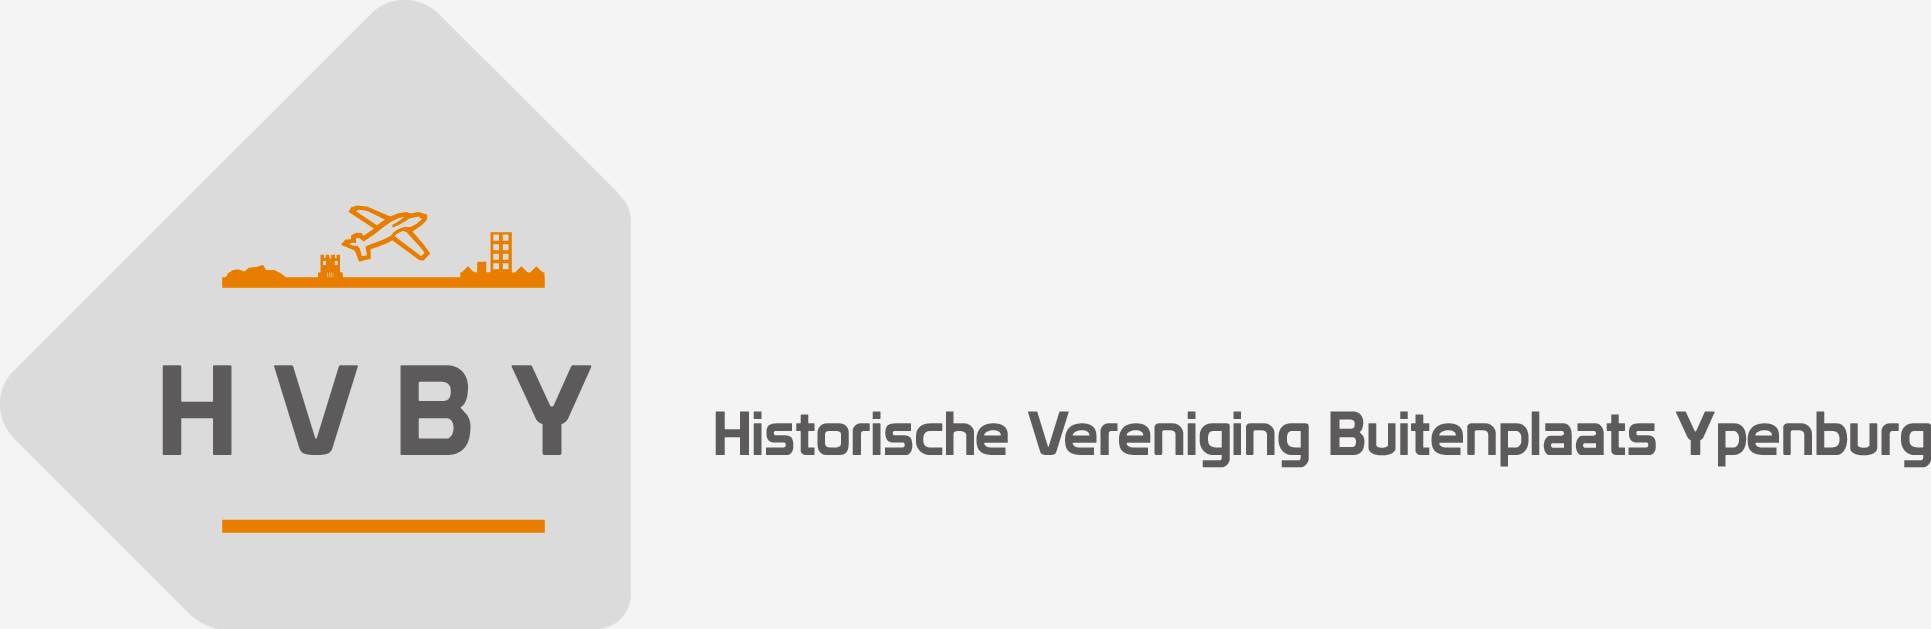 Historische Vereniging Buitenplaats Ypenburg